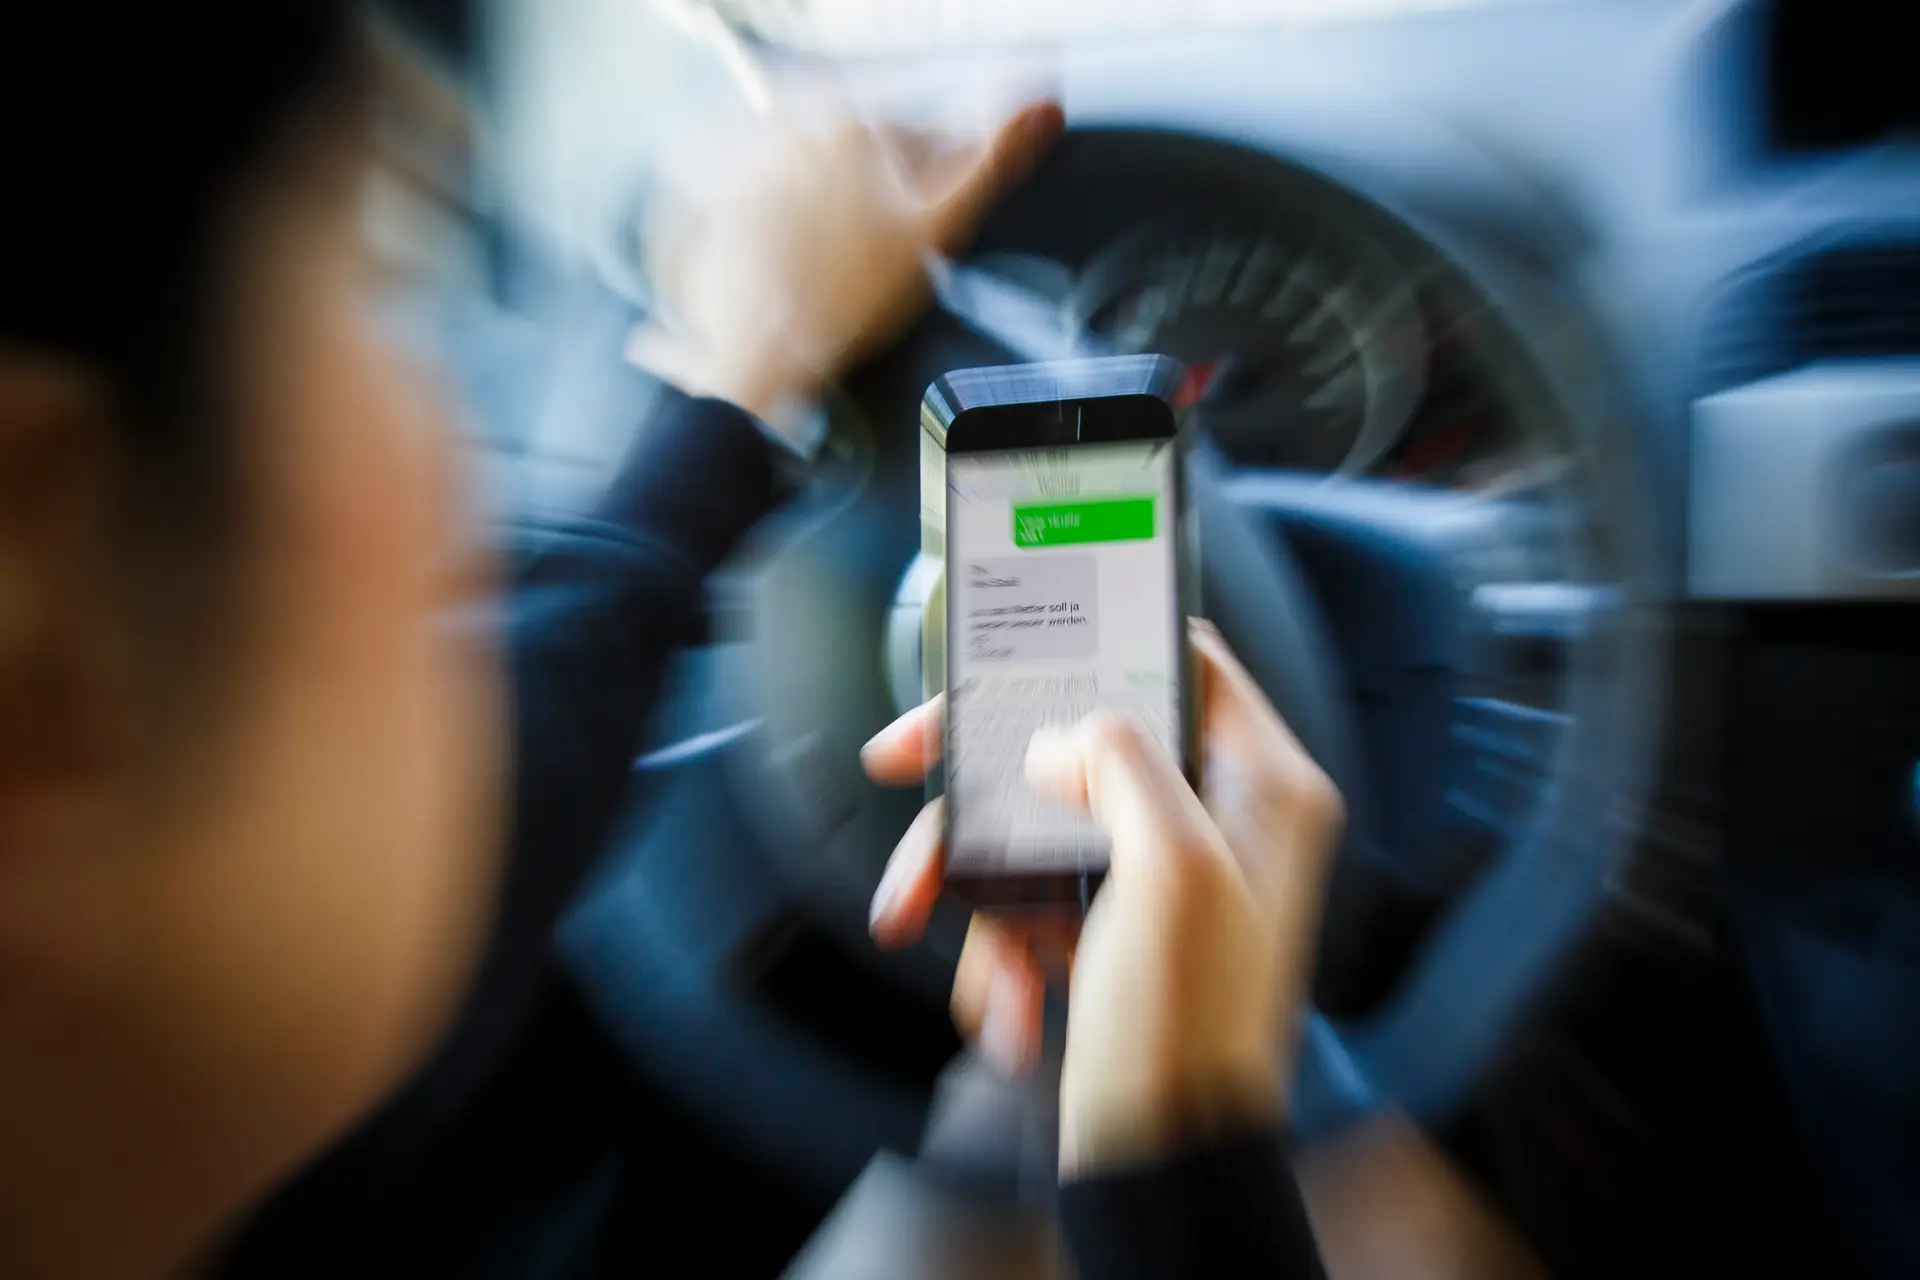 Autoridades lançam campanha de sensibilização "Ao volante, o telemóvel pode esperar"